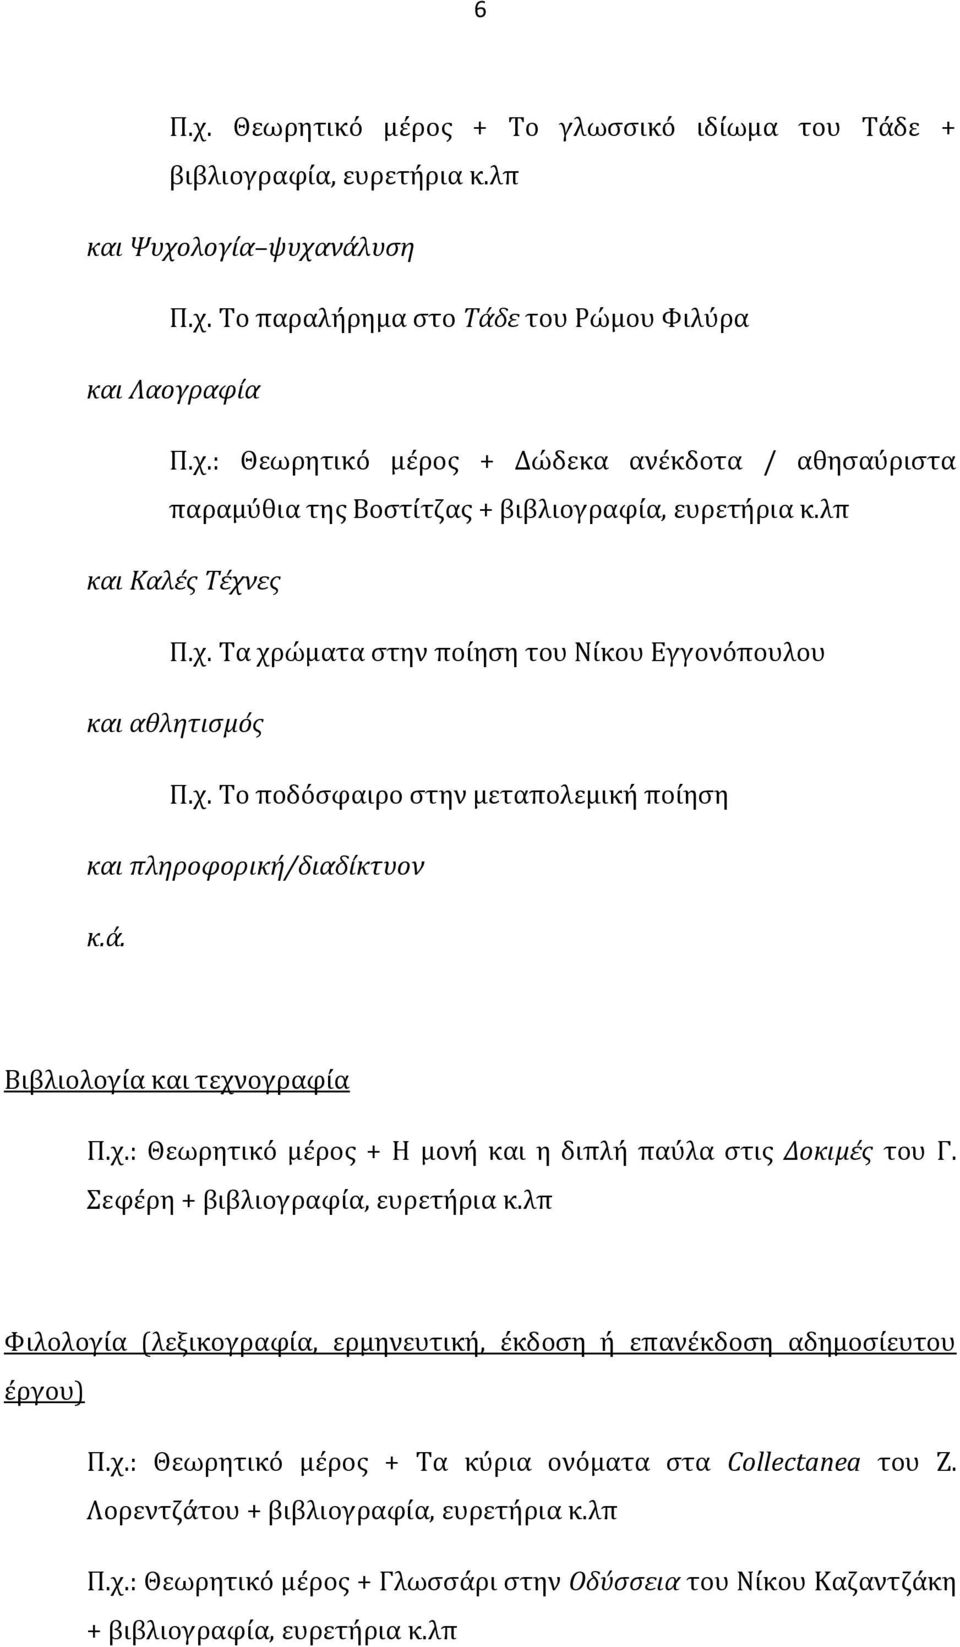 Σεφέρη + βιβλιογραφία, ευρετήρια κ.λπ Φιλολογία (λεξικογραφία, ερμηνευτική, έκδοση ή επανέκδοση αδημοσίευτου έργου) Π.χ.: Θεωρητικό μέρος + Τα κύρια ονόματα στα Collectanea του Ζ.